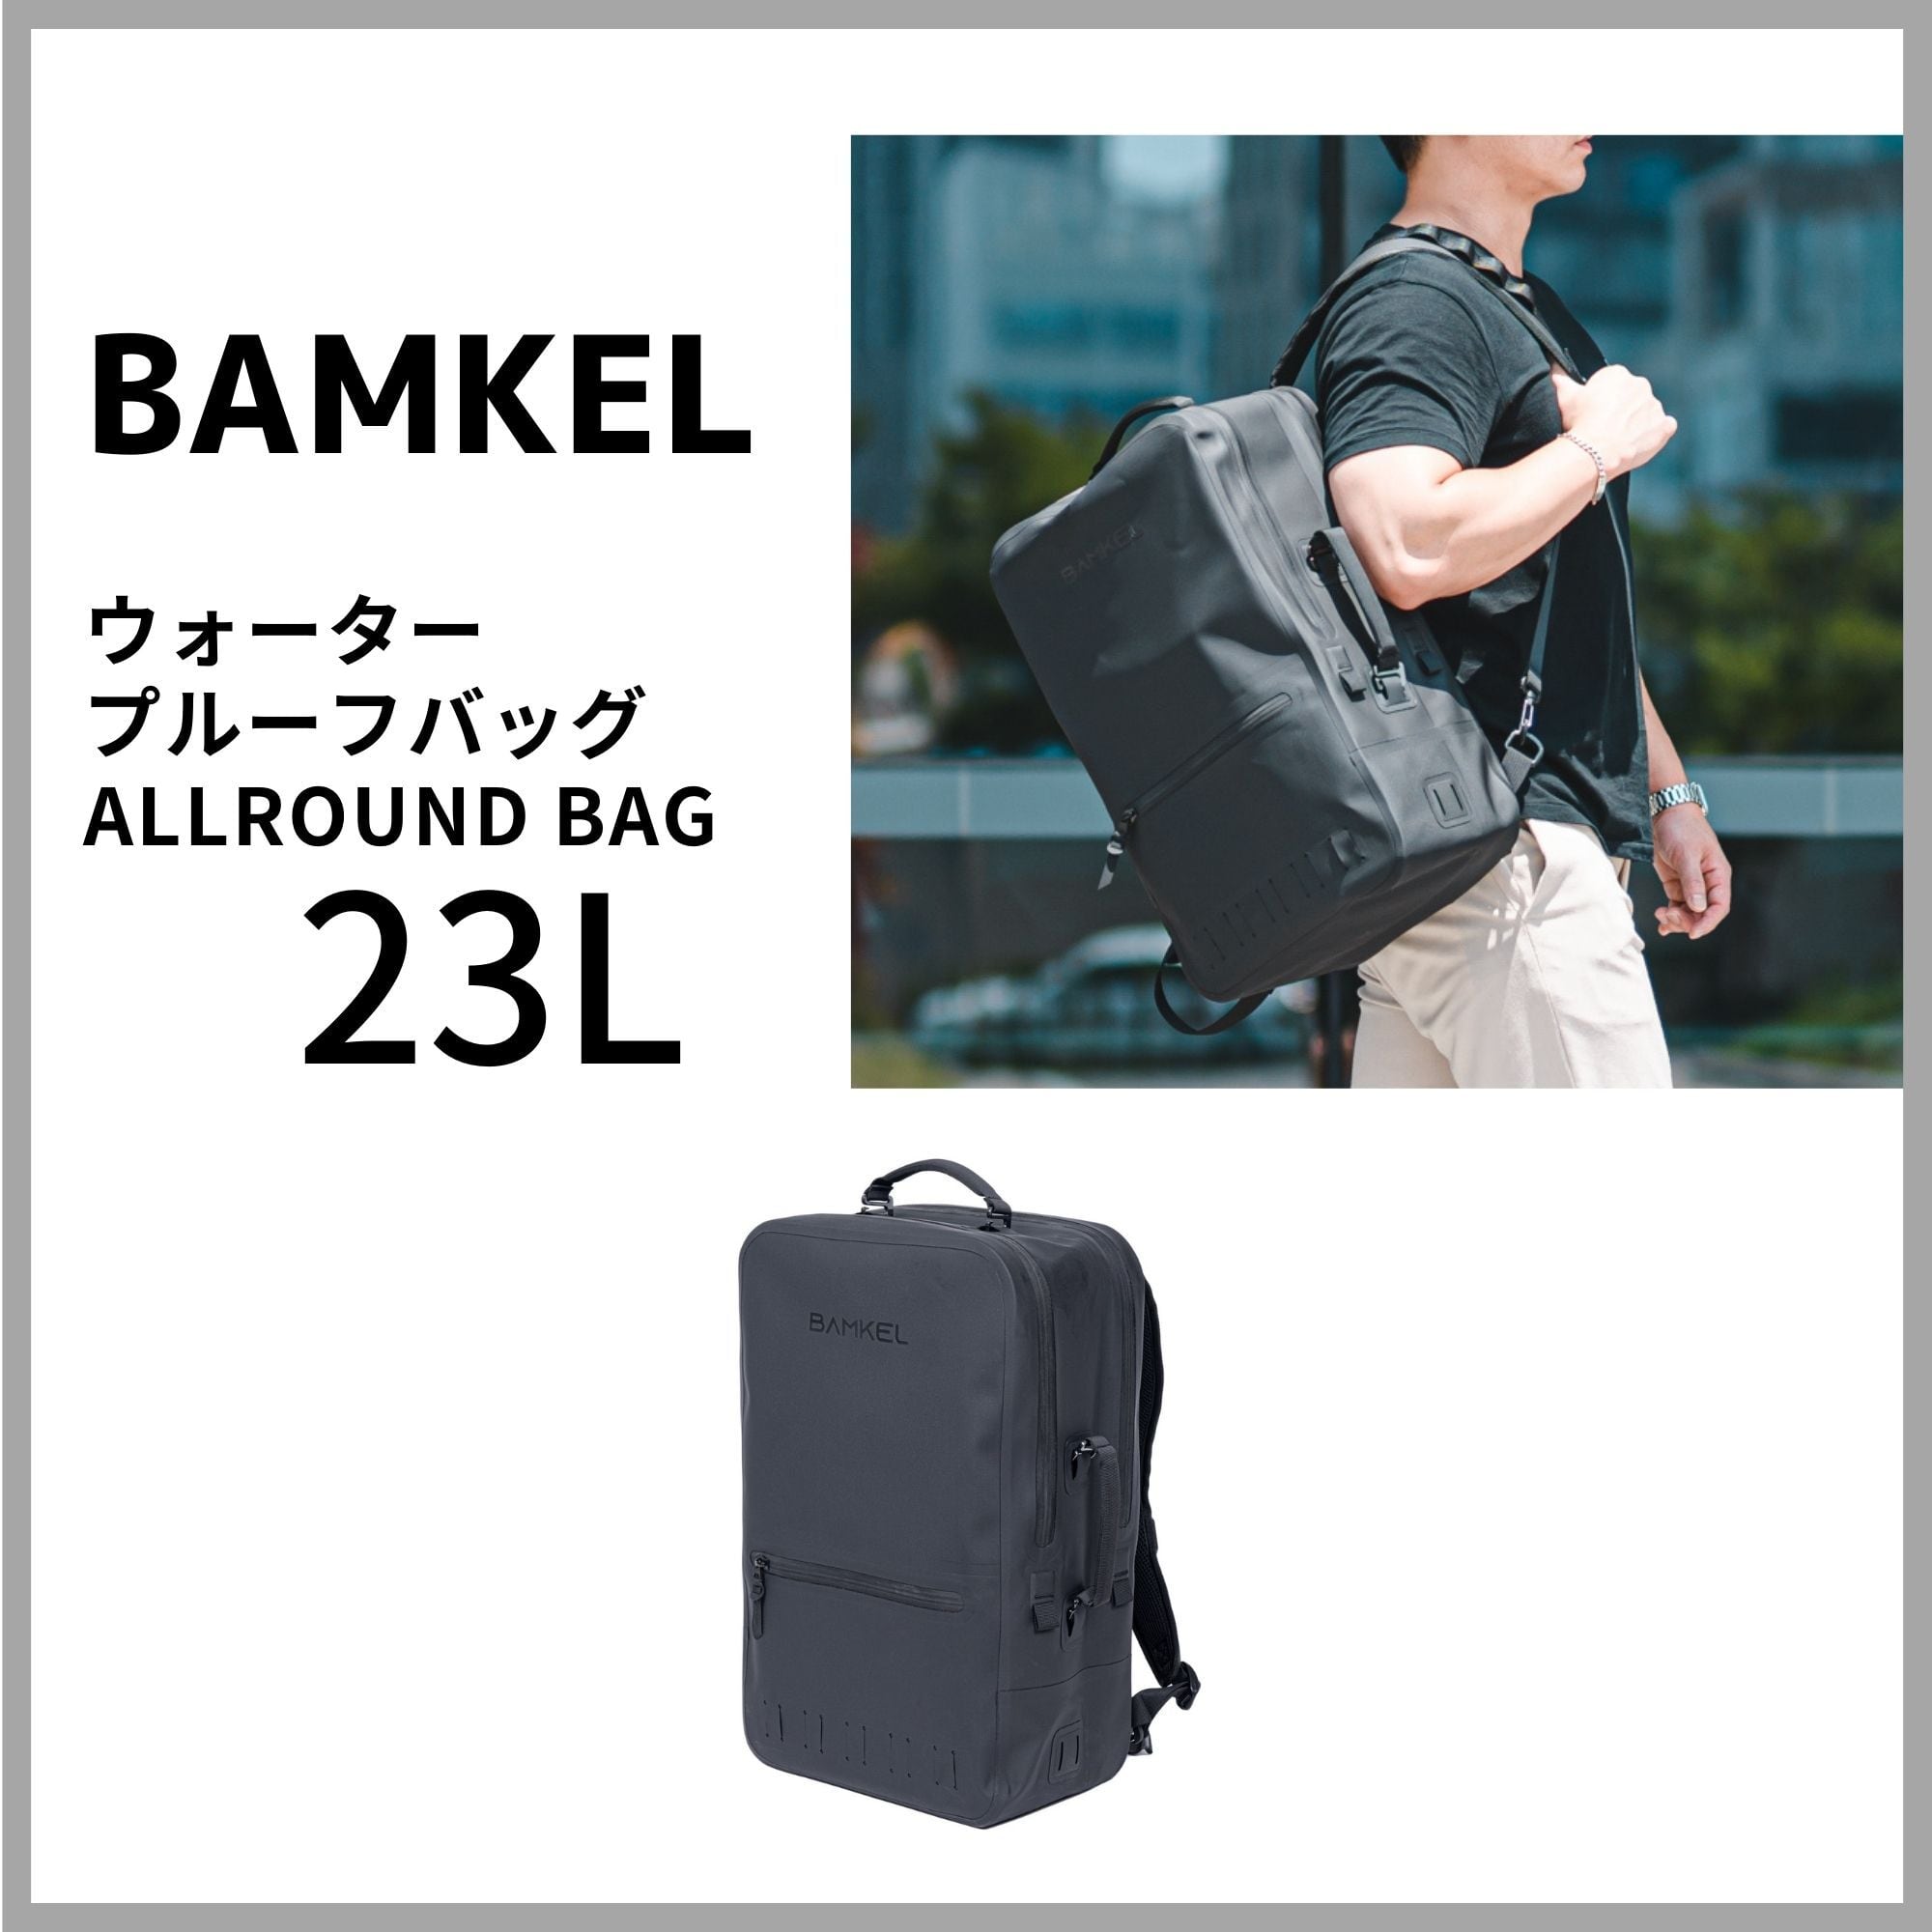 BAMKEL(バンケル) オールラウンドバッグ 23L リュック 大容量 高耐久